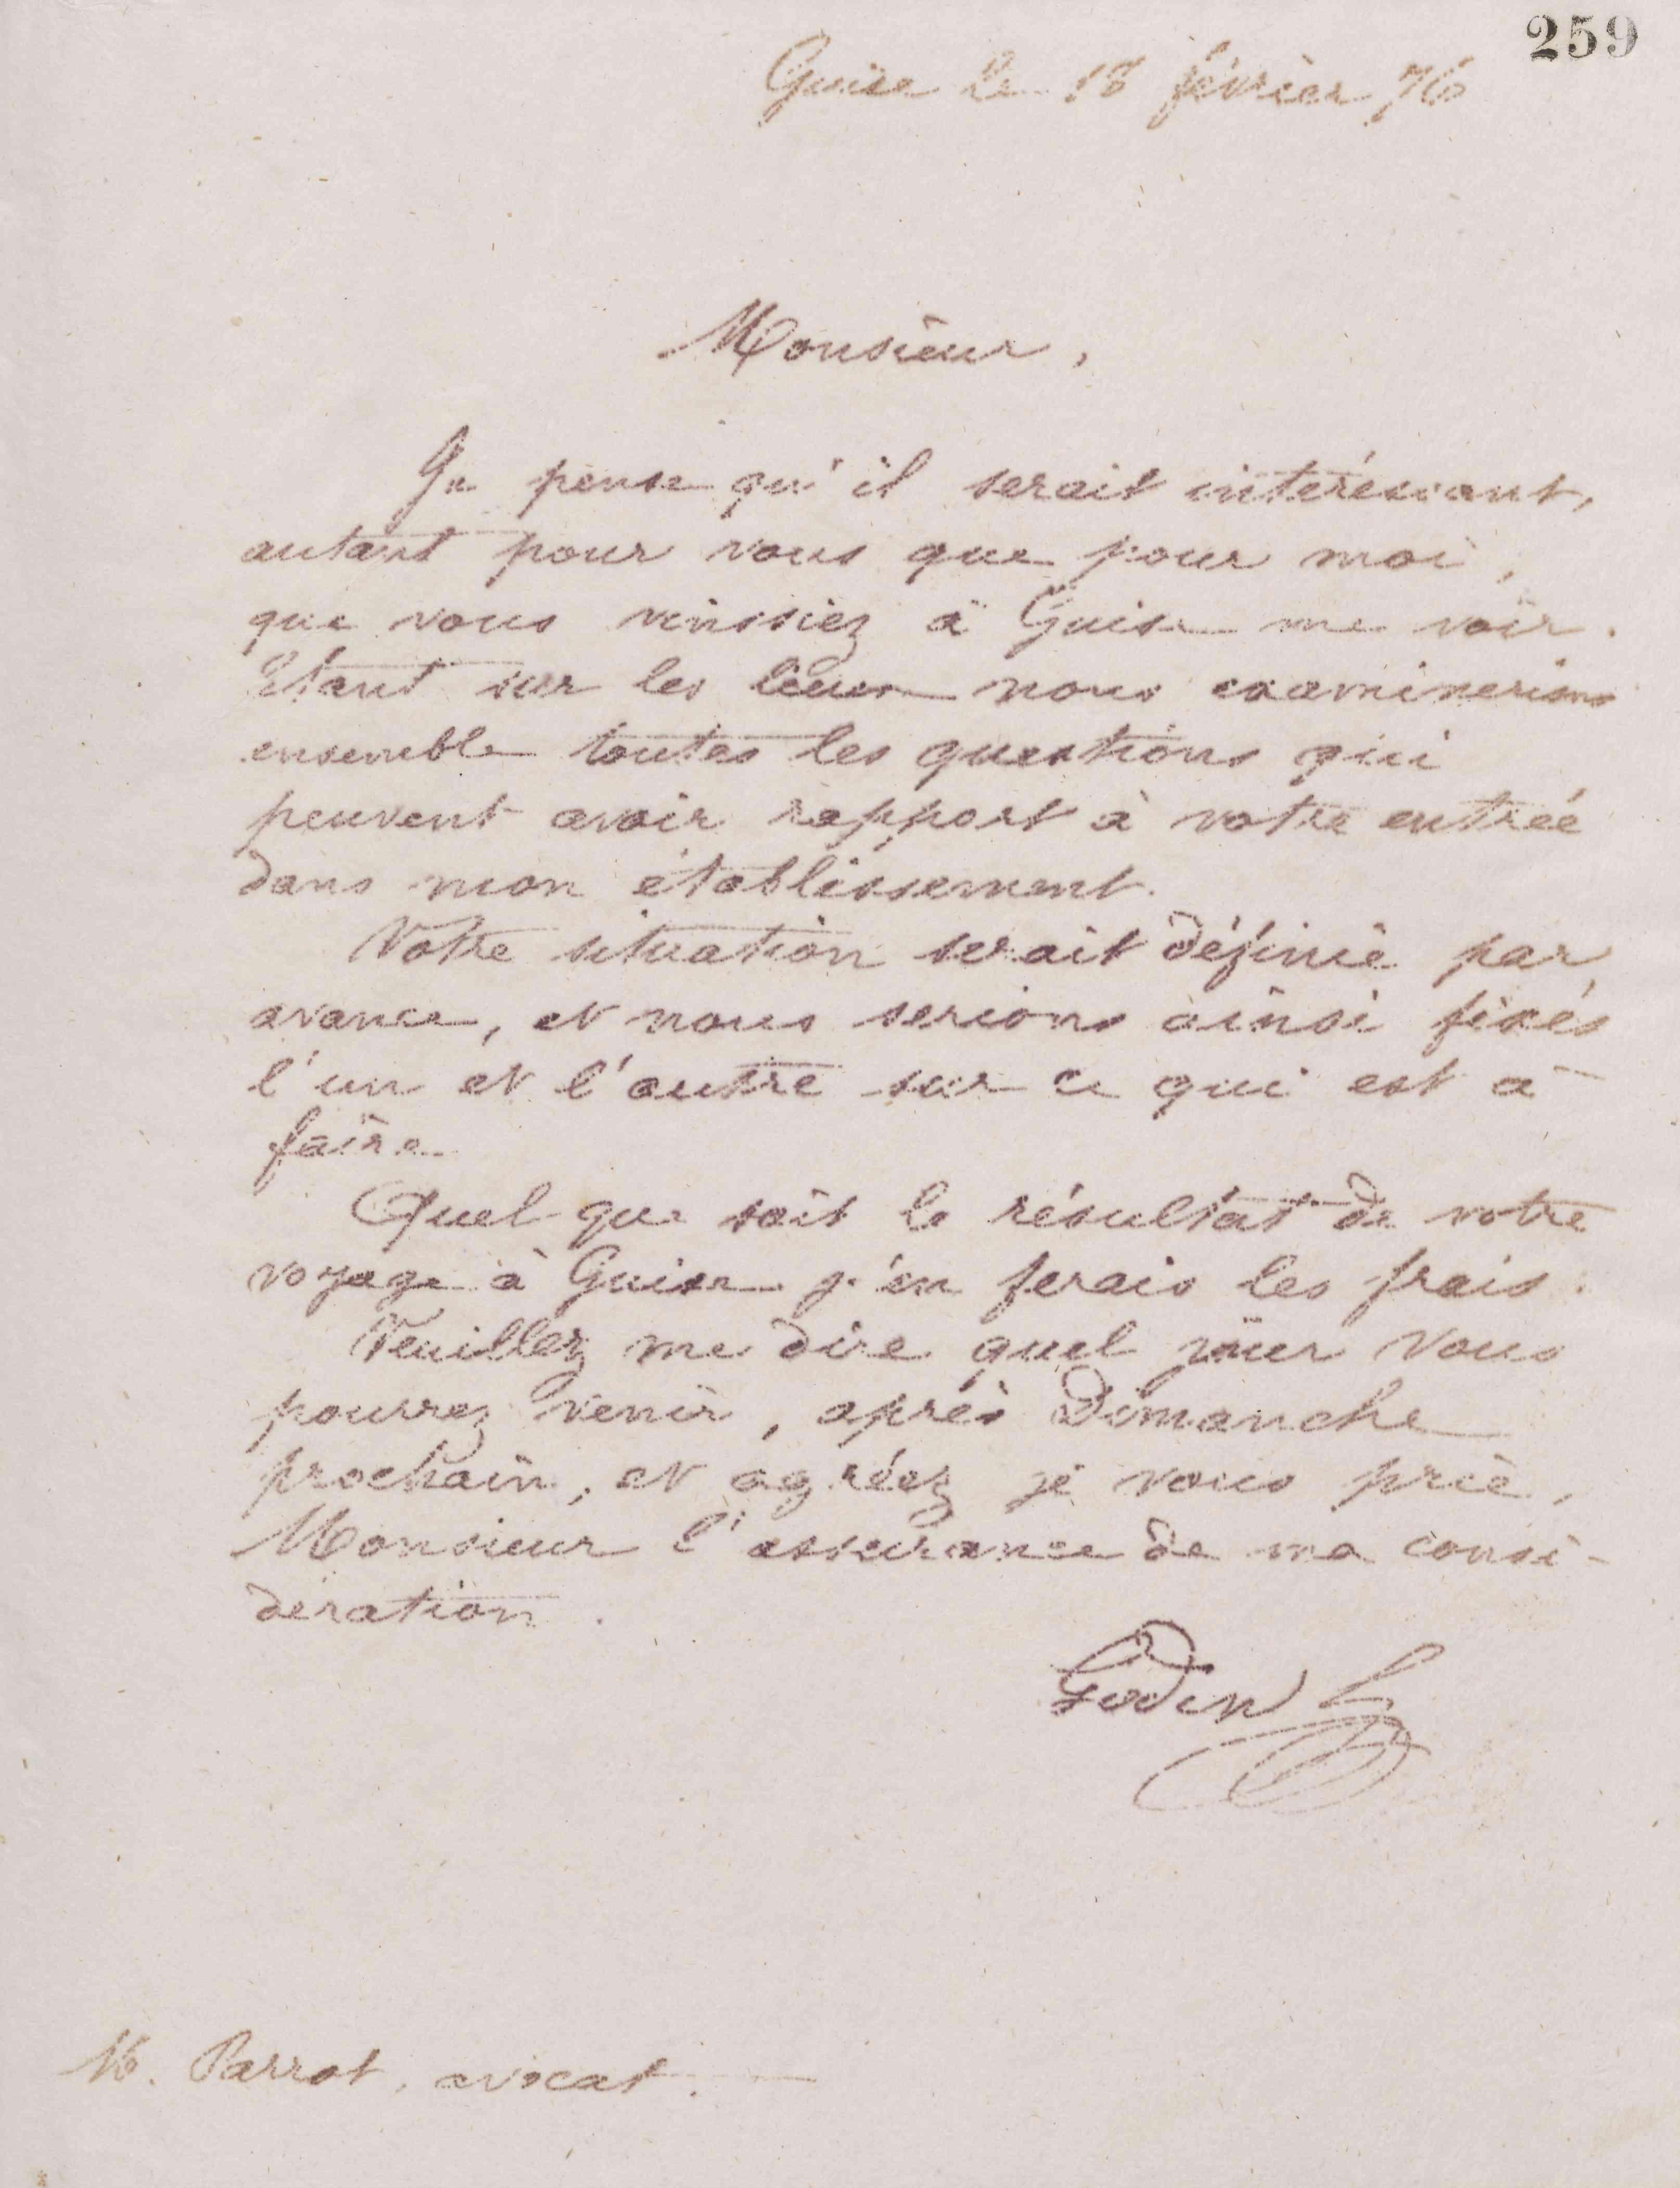 Jean-Baptiste André Godin à monsieur Parrot, 18 février 1876